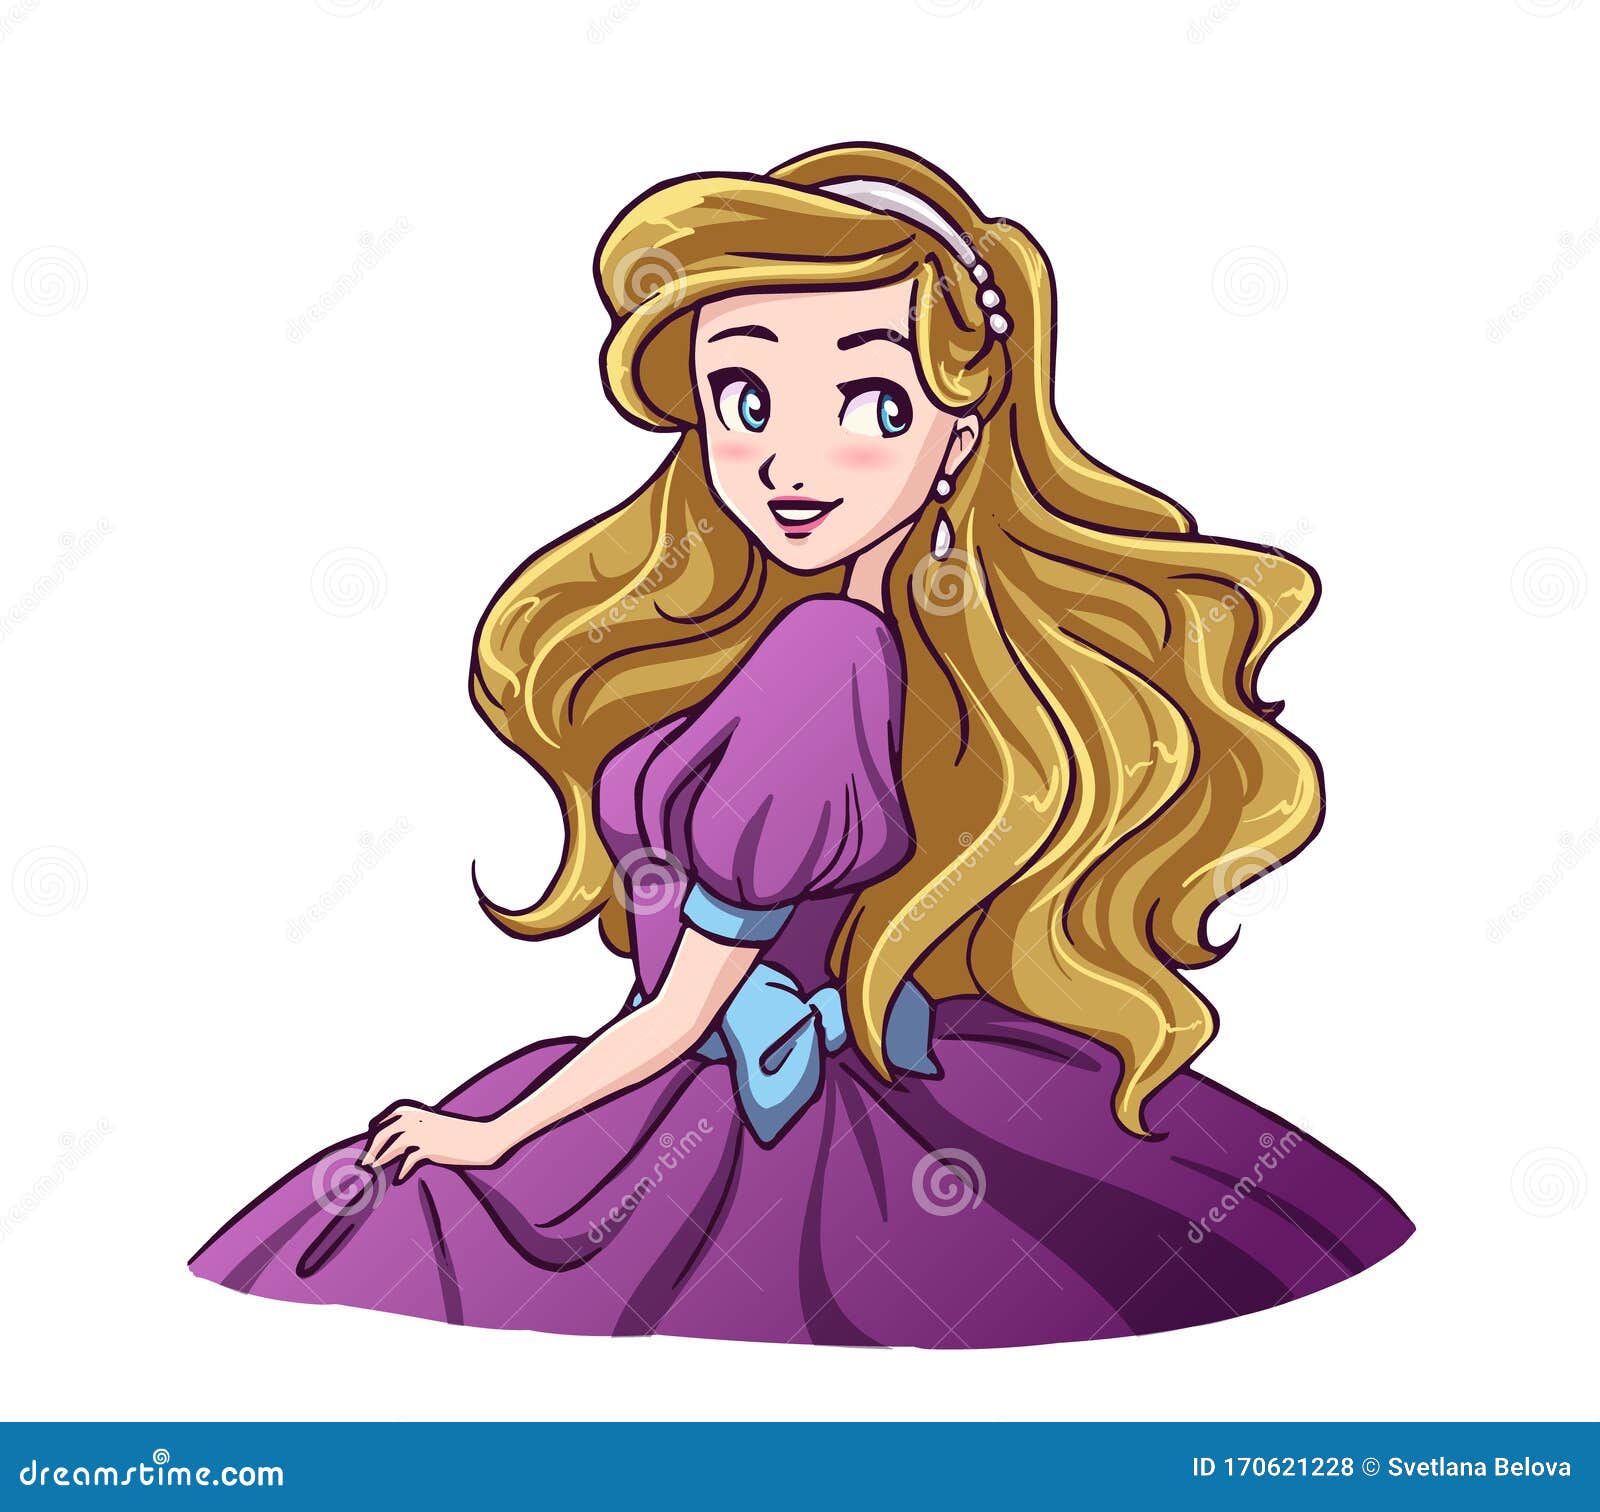 Desenho de Princesa moderna para Colorir - Colorir.com